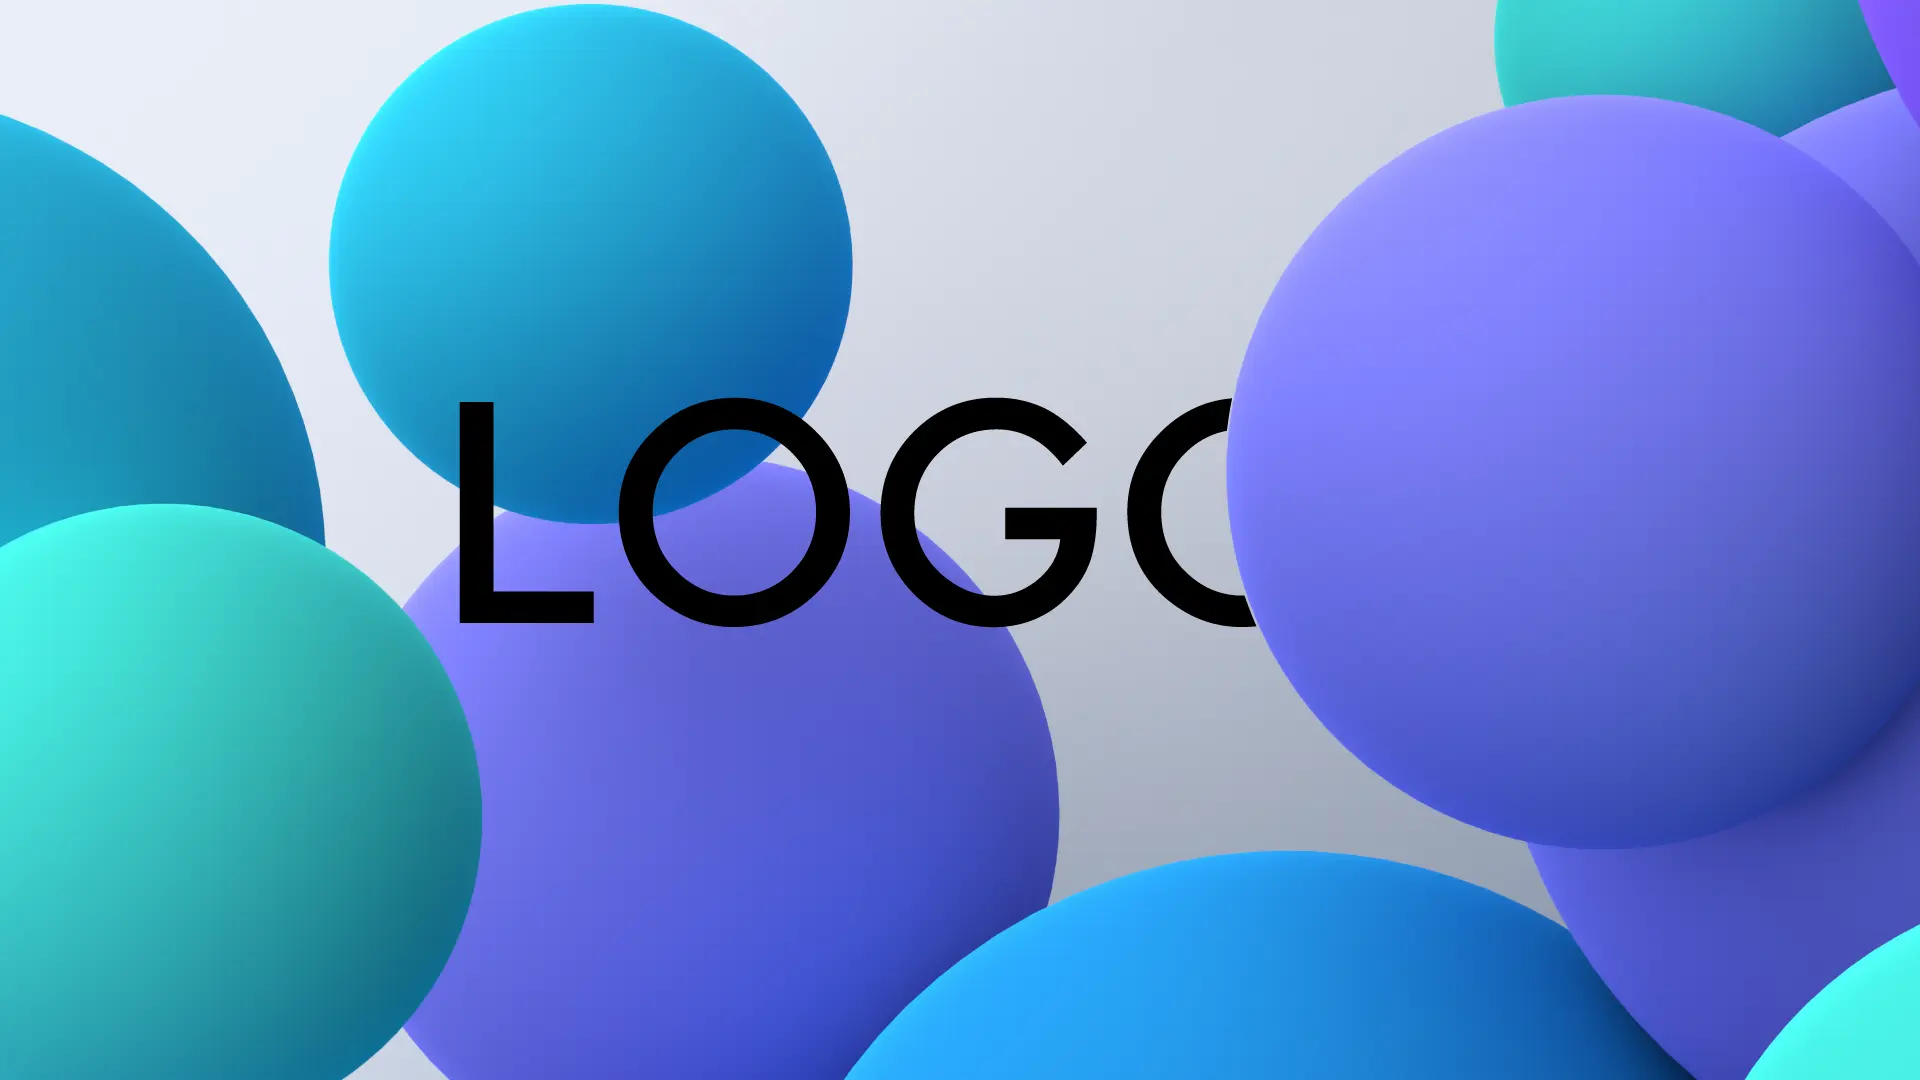 bloglogodesign cov